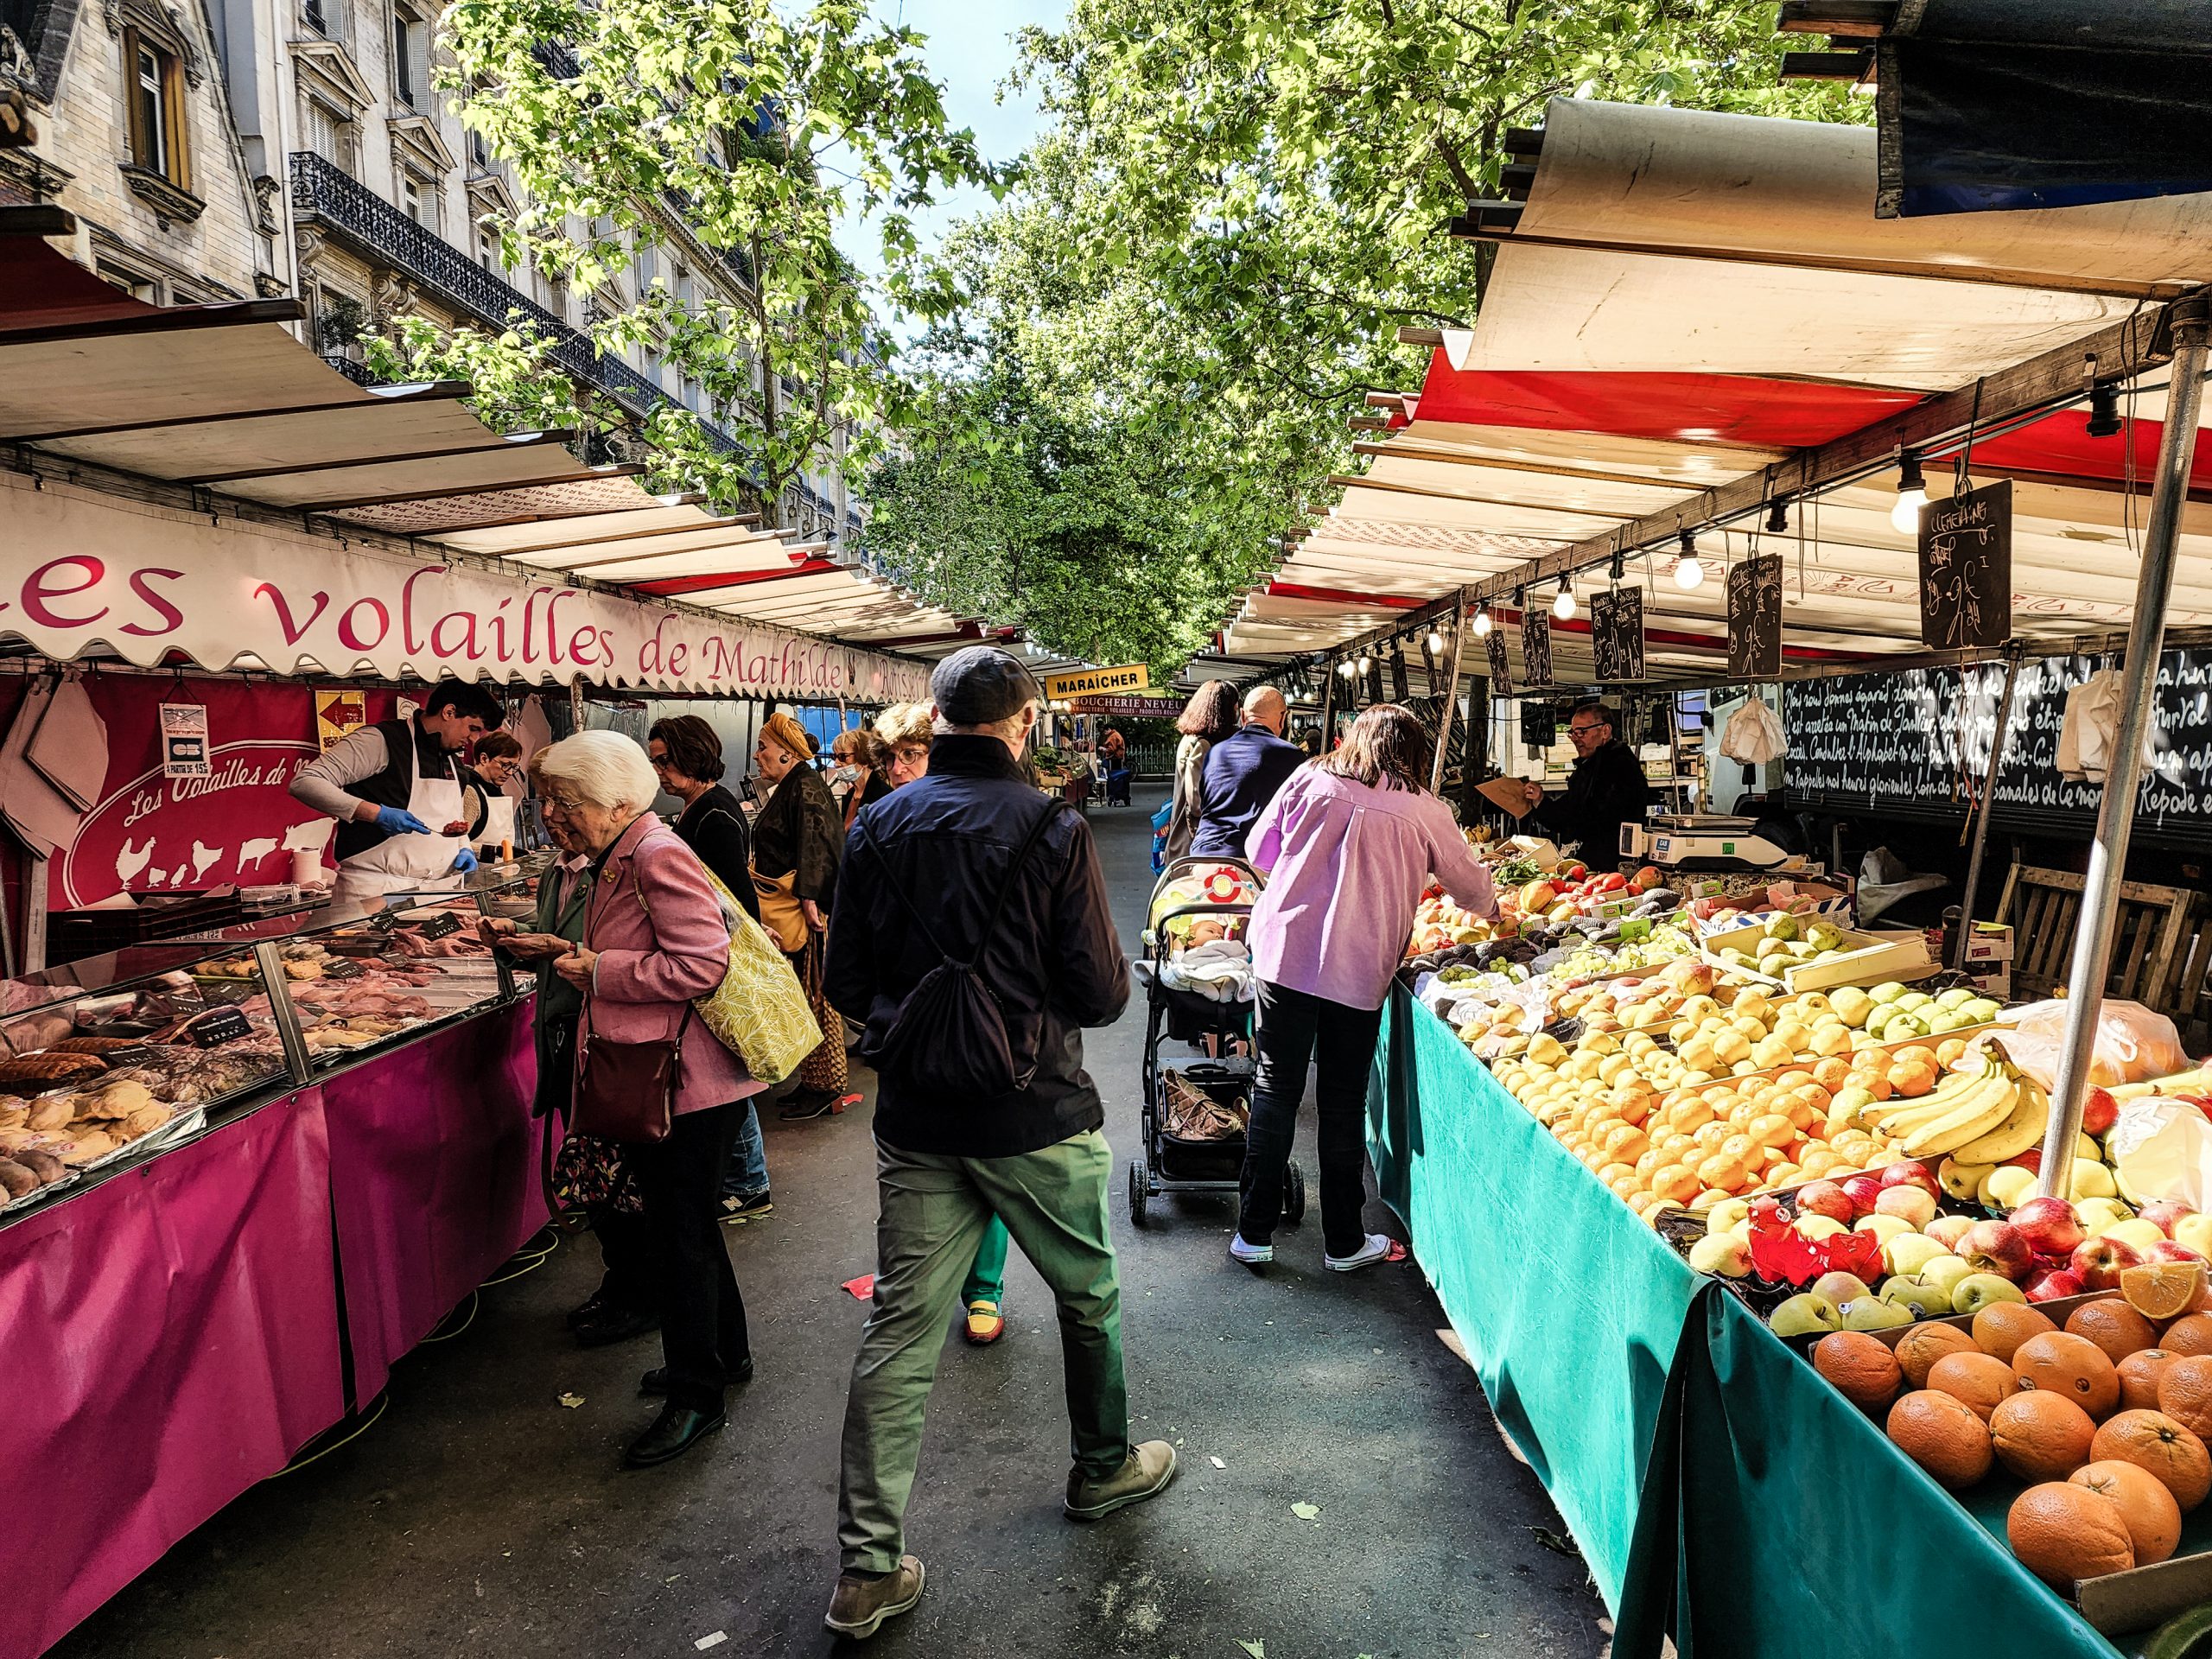 Paris Market